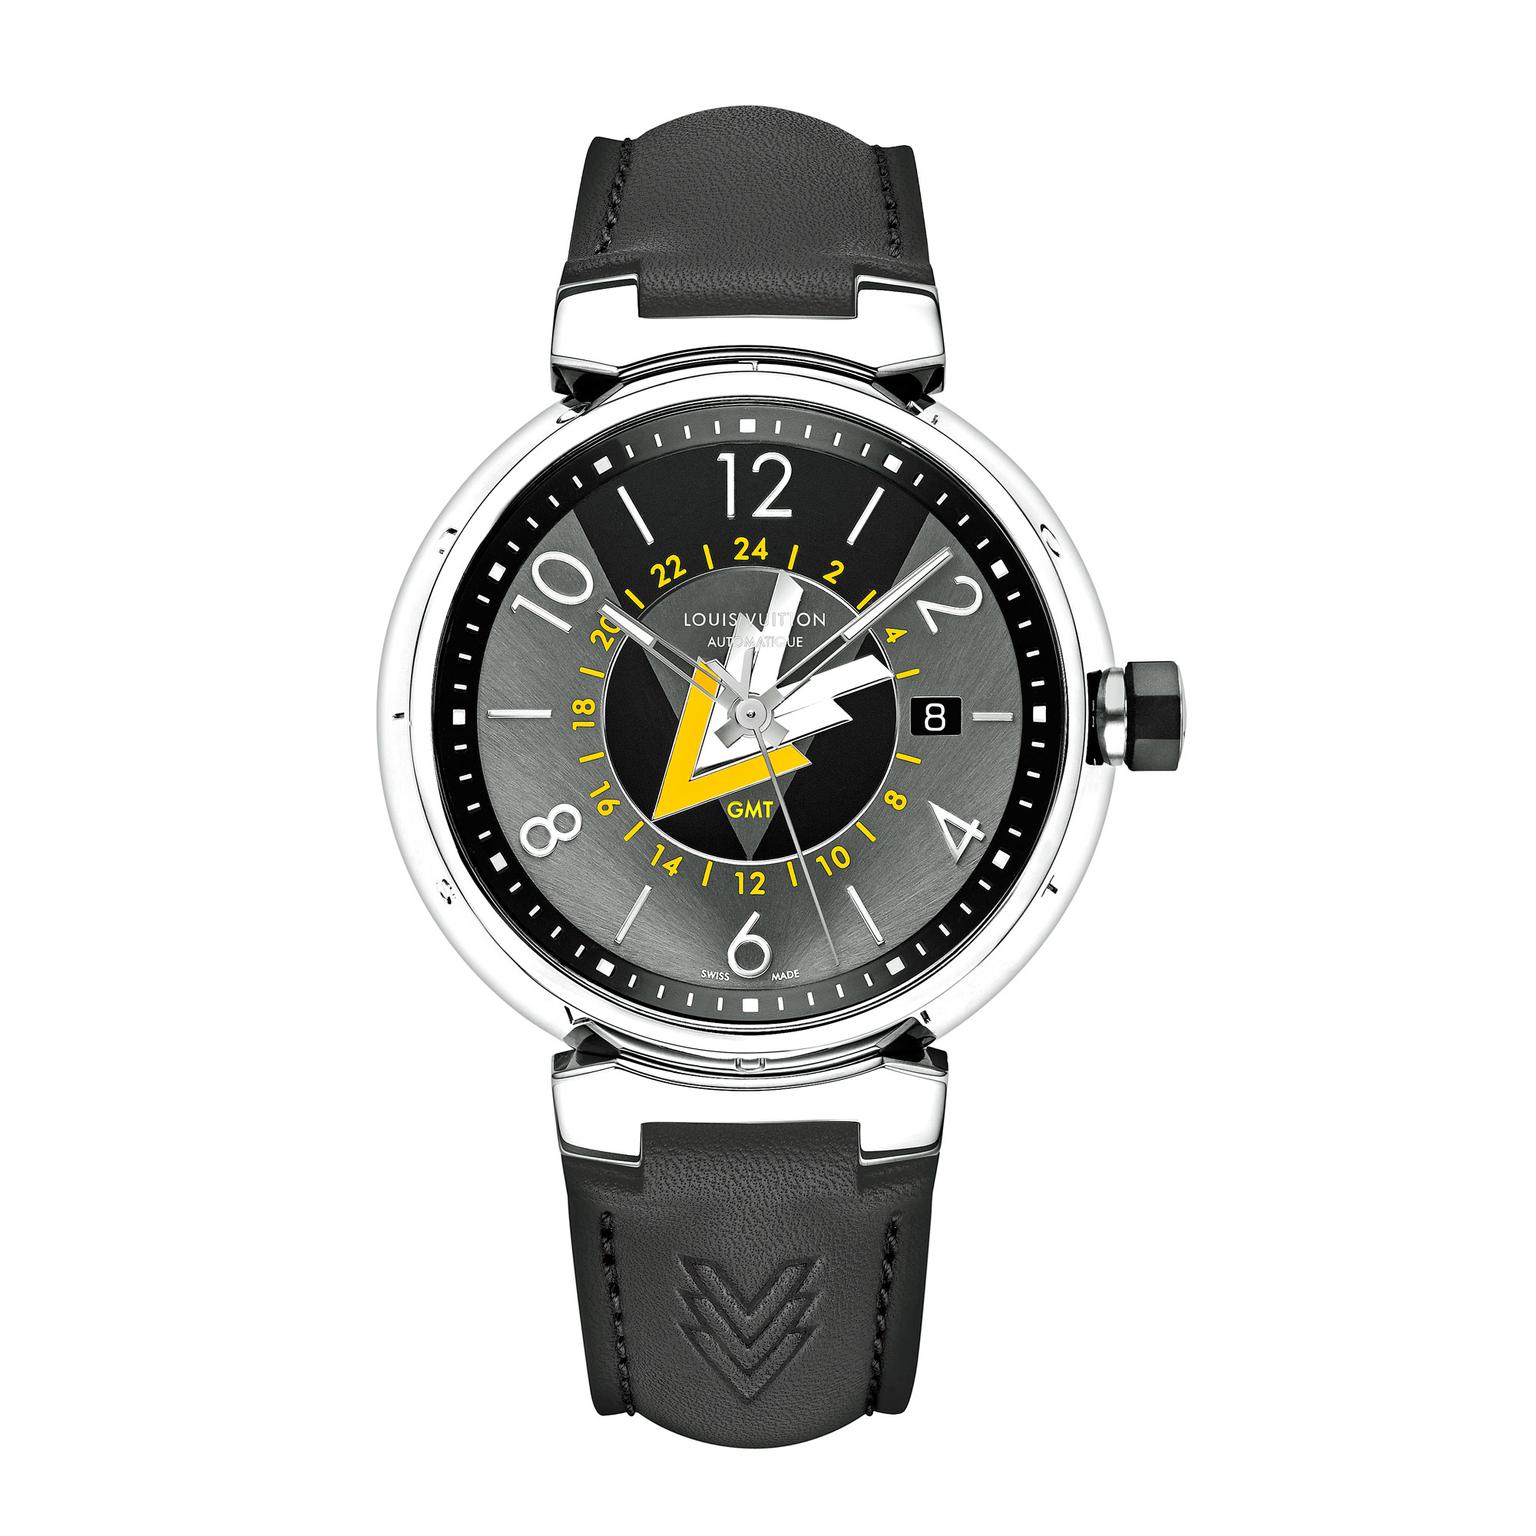 Louis Vuitton Voyager GMT watch in steel